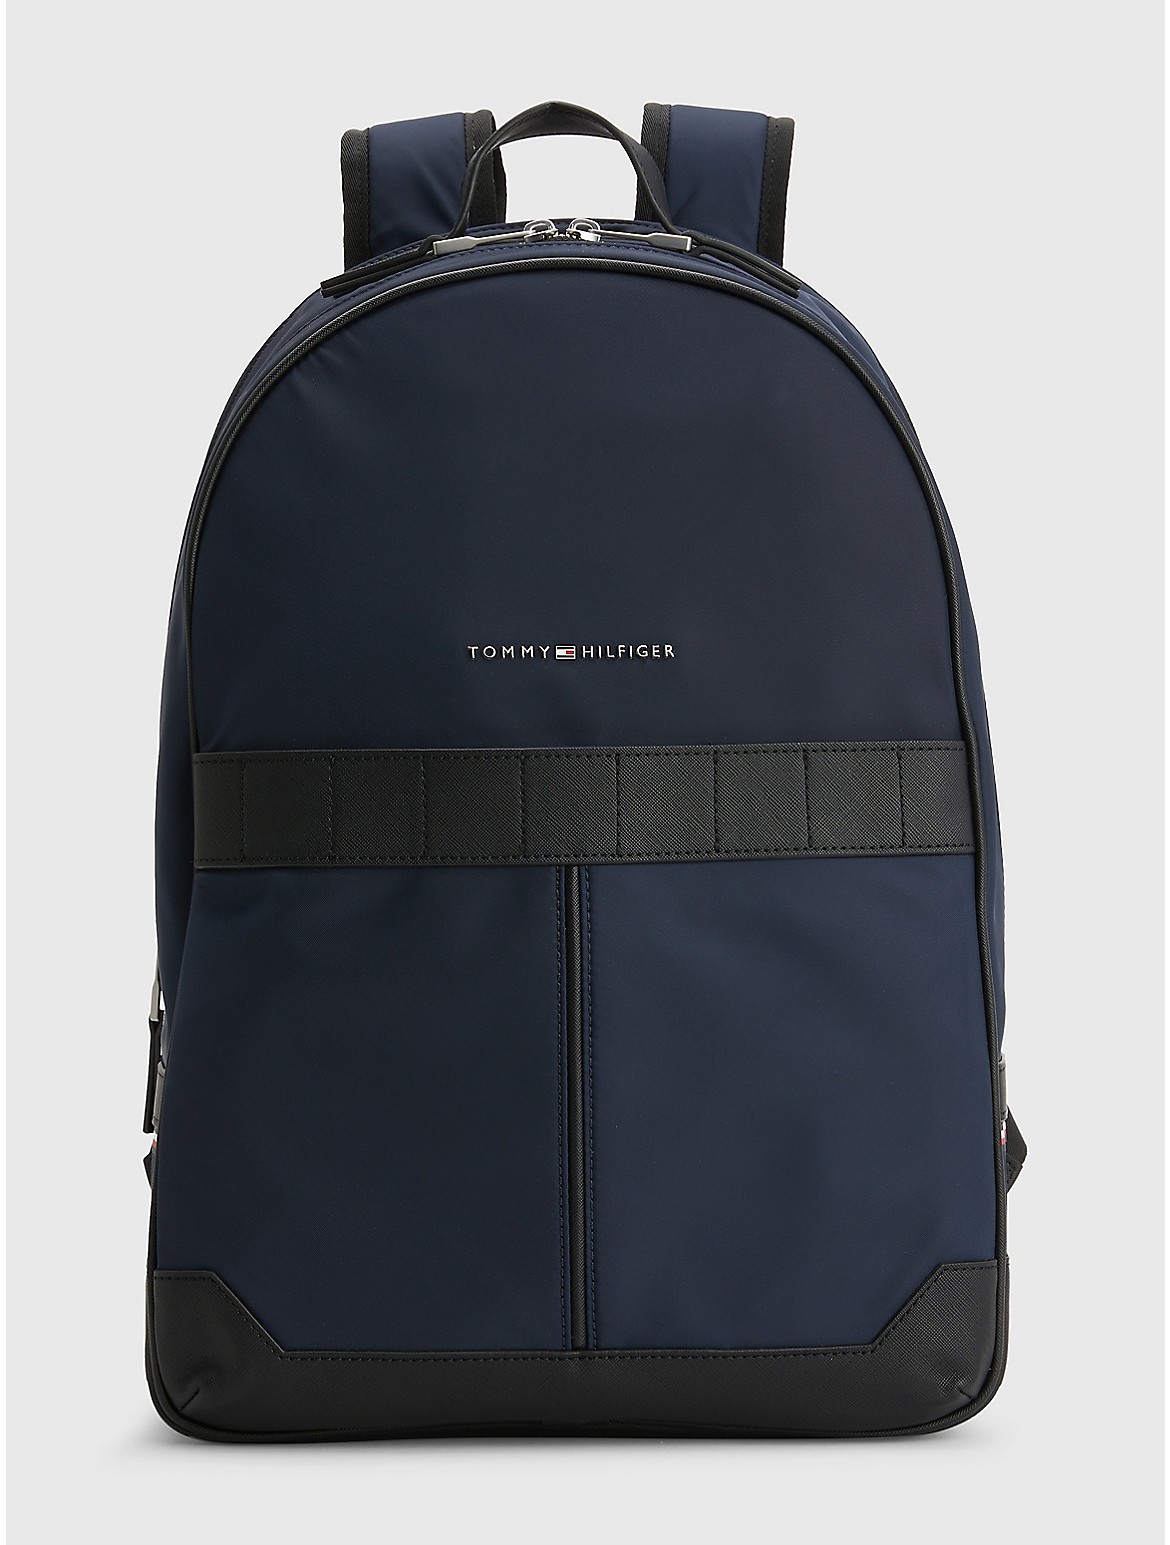 Tommy Hilfiger Men's Commuter Nylon Backpack - Blue